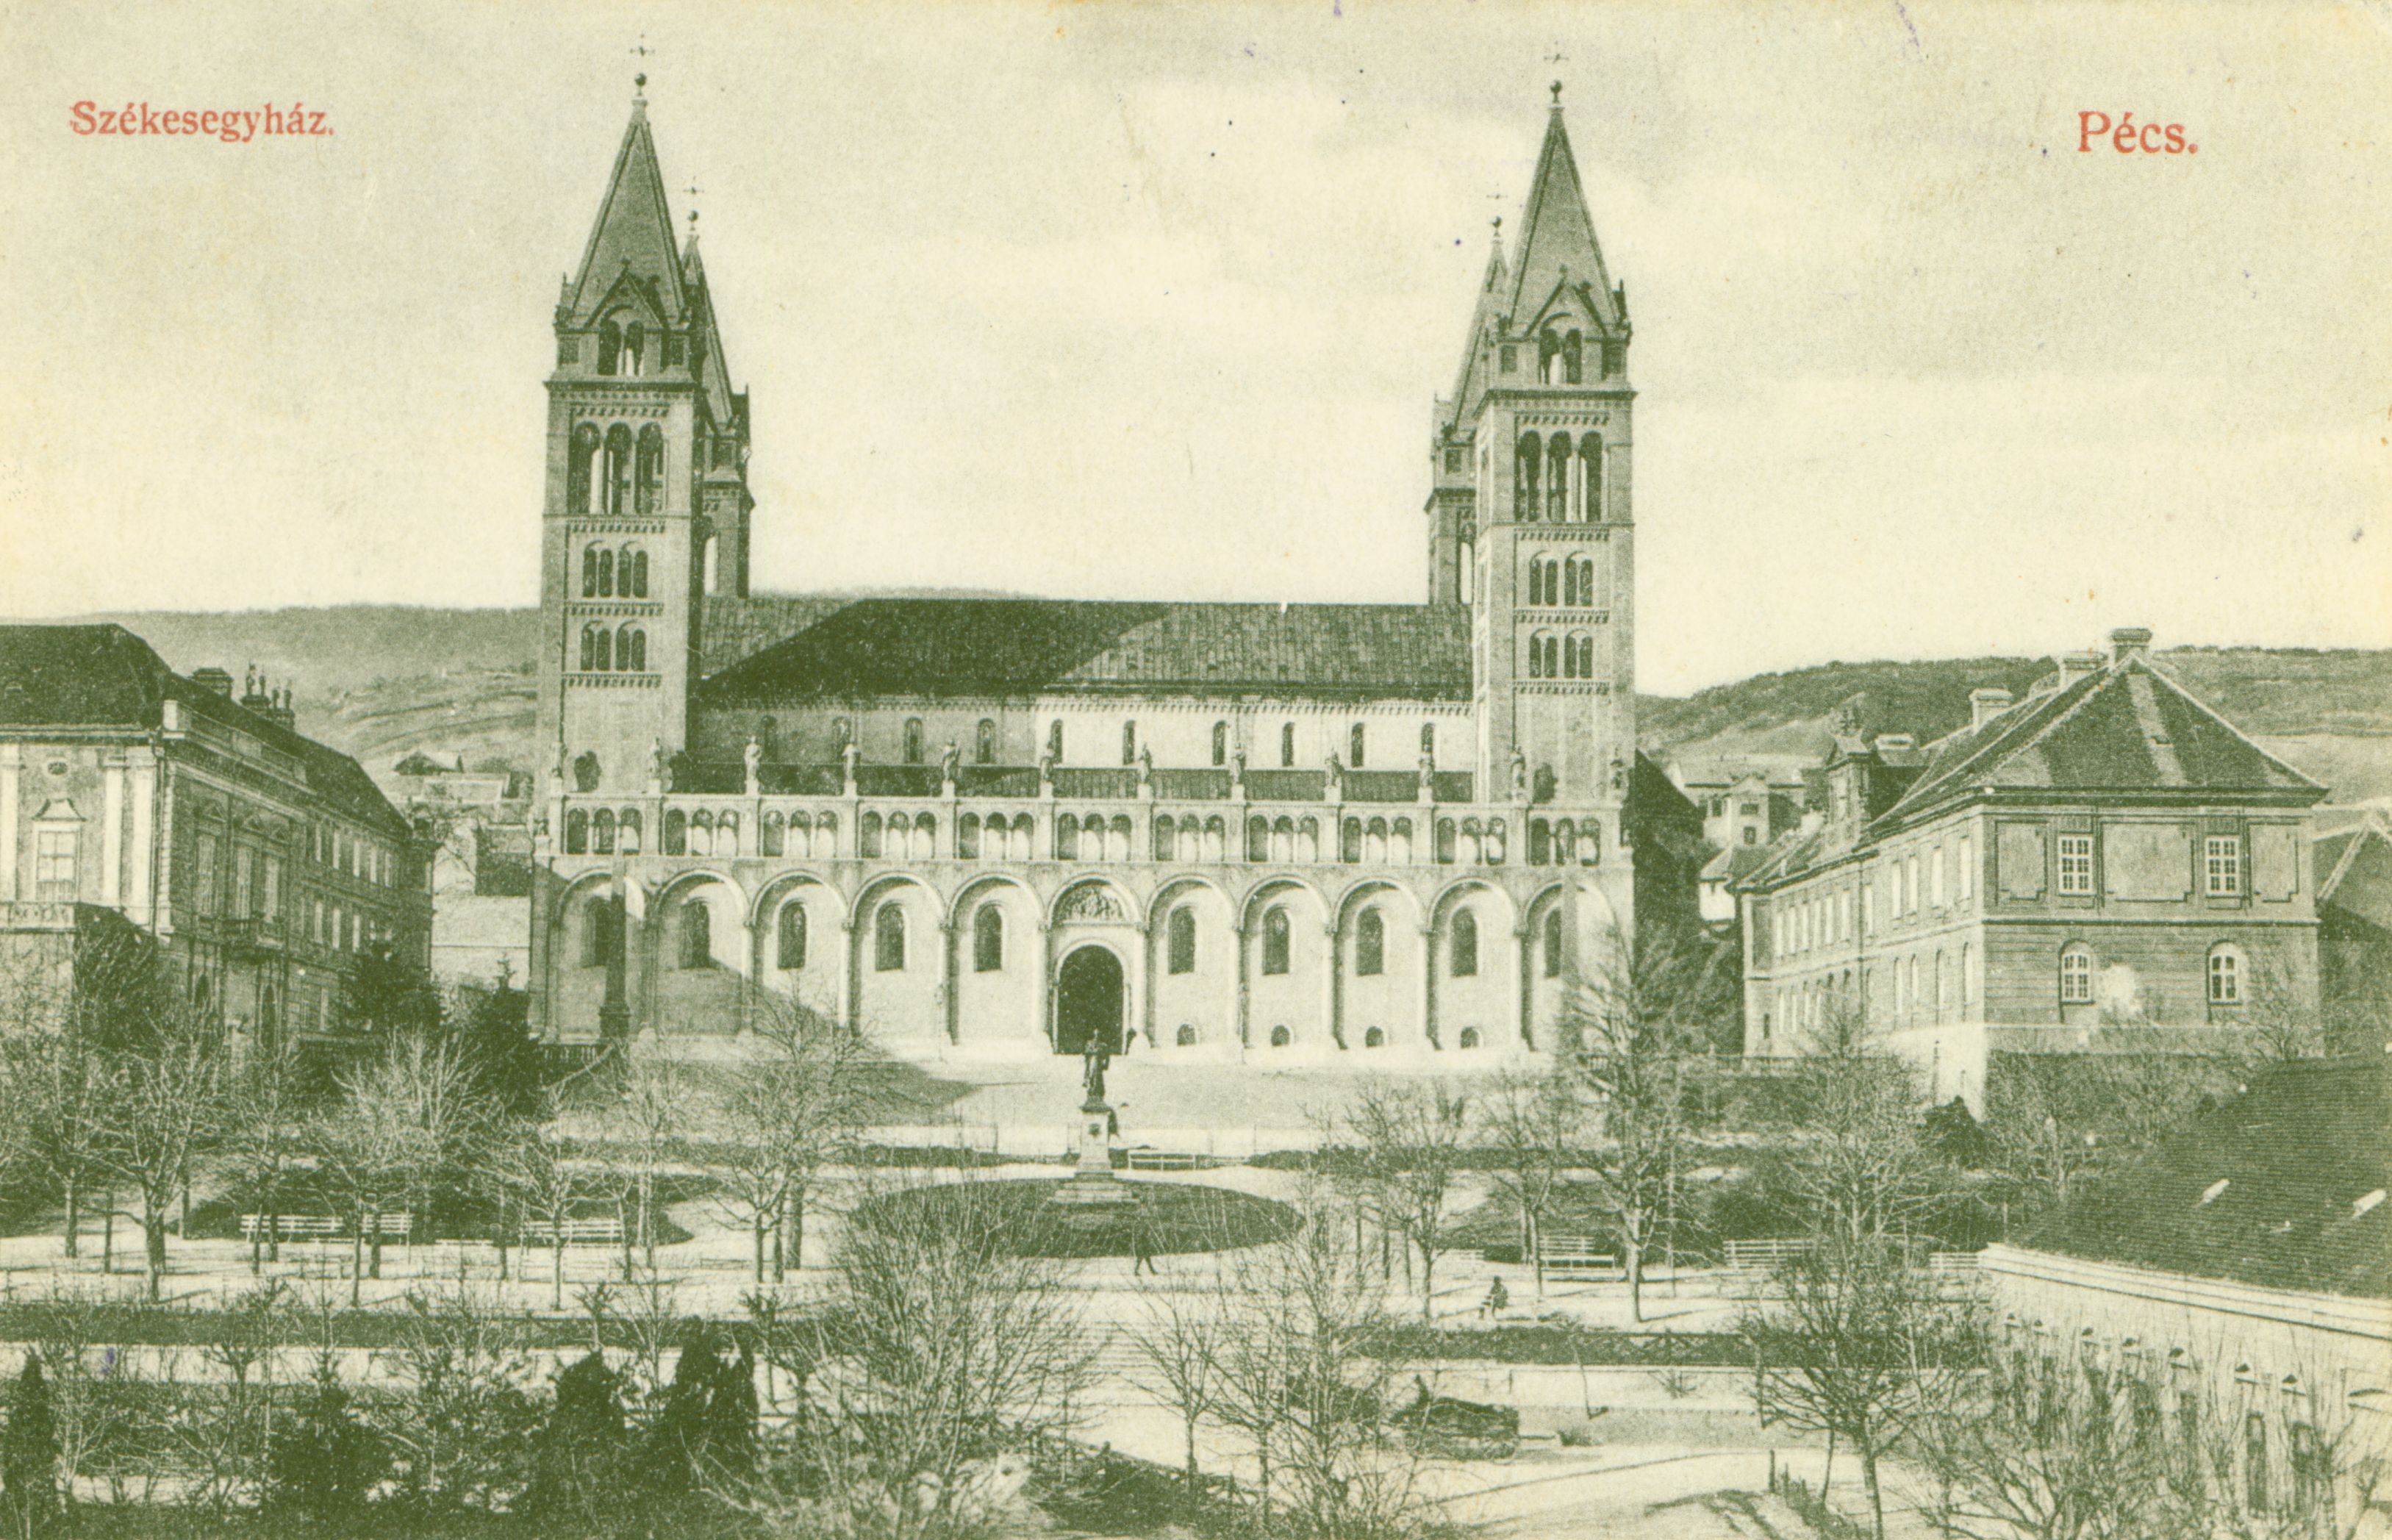 Pécs Székesegyház az 1920-as években